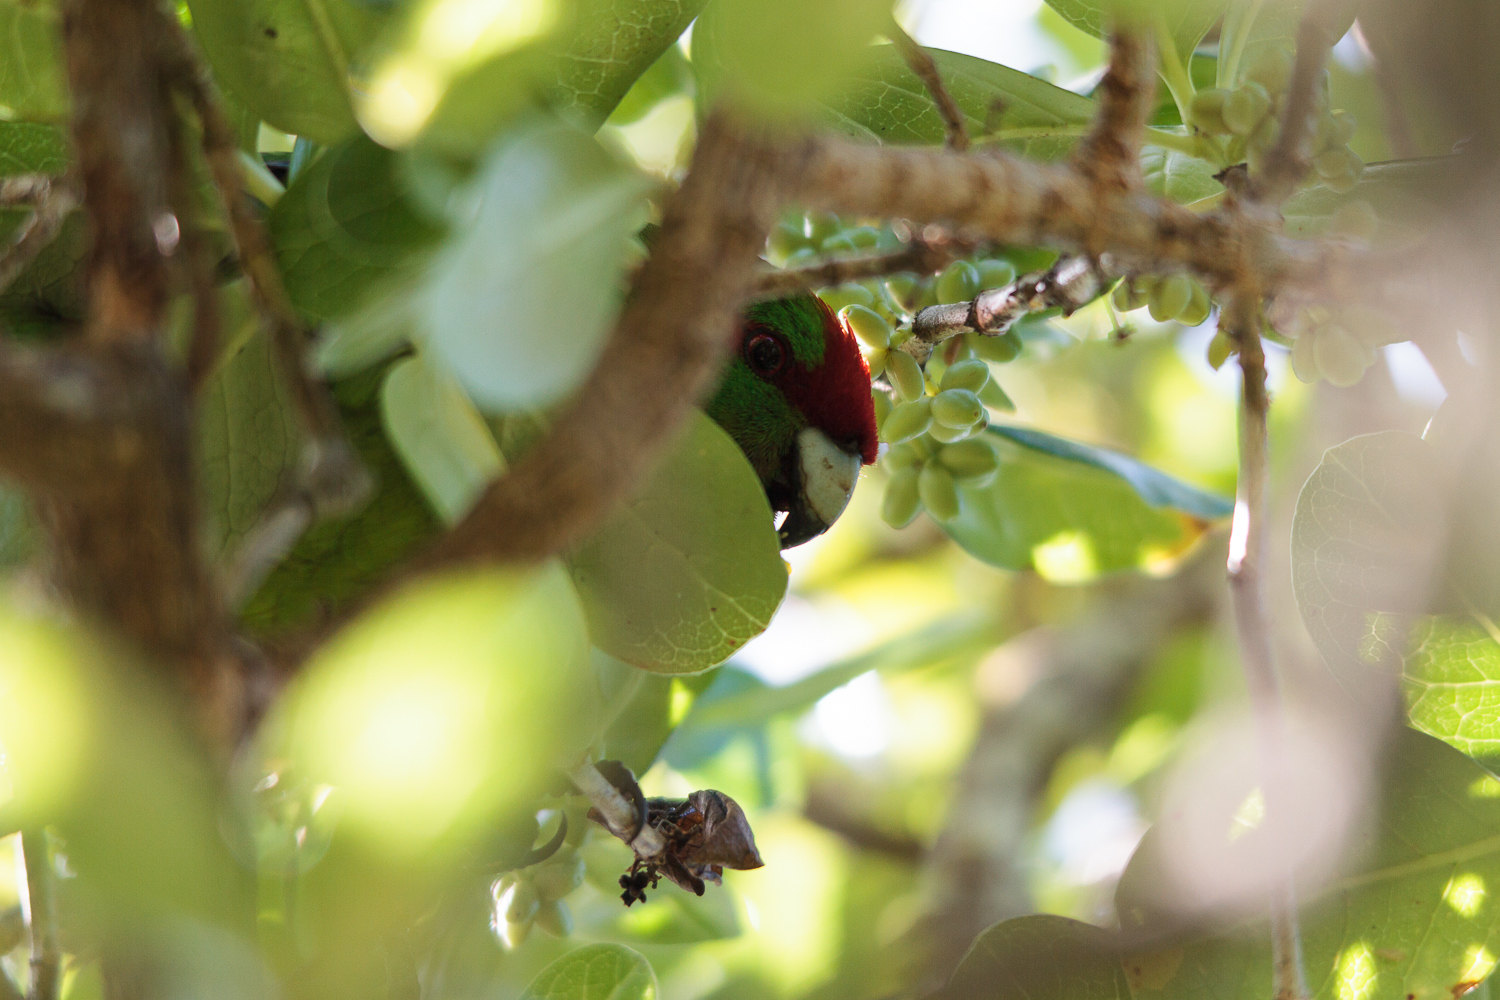 A kakariki hiding in the foliage